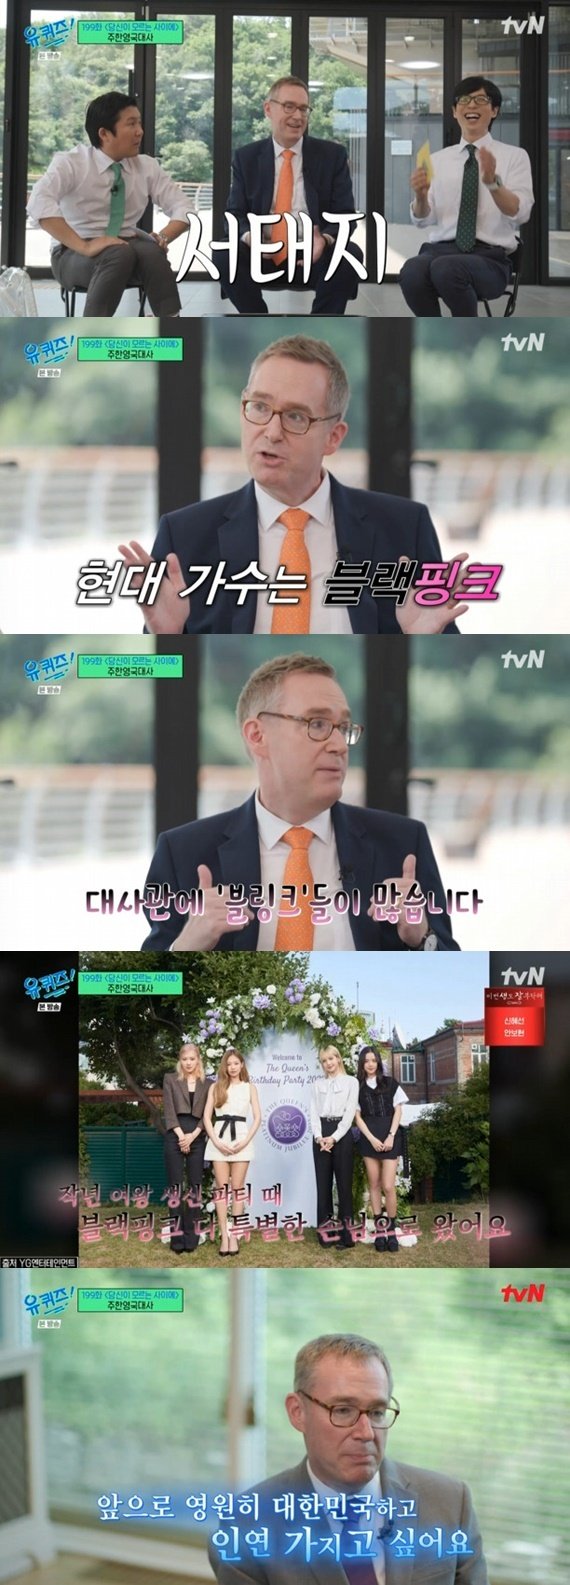 tvN '유 퀴즈 온 더 블럭' 캡처